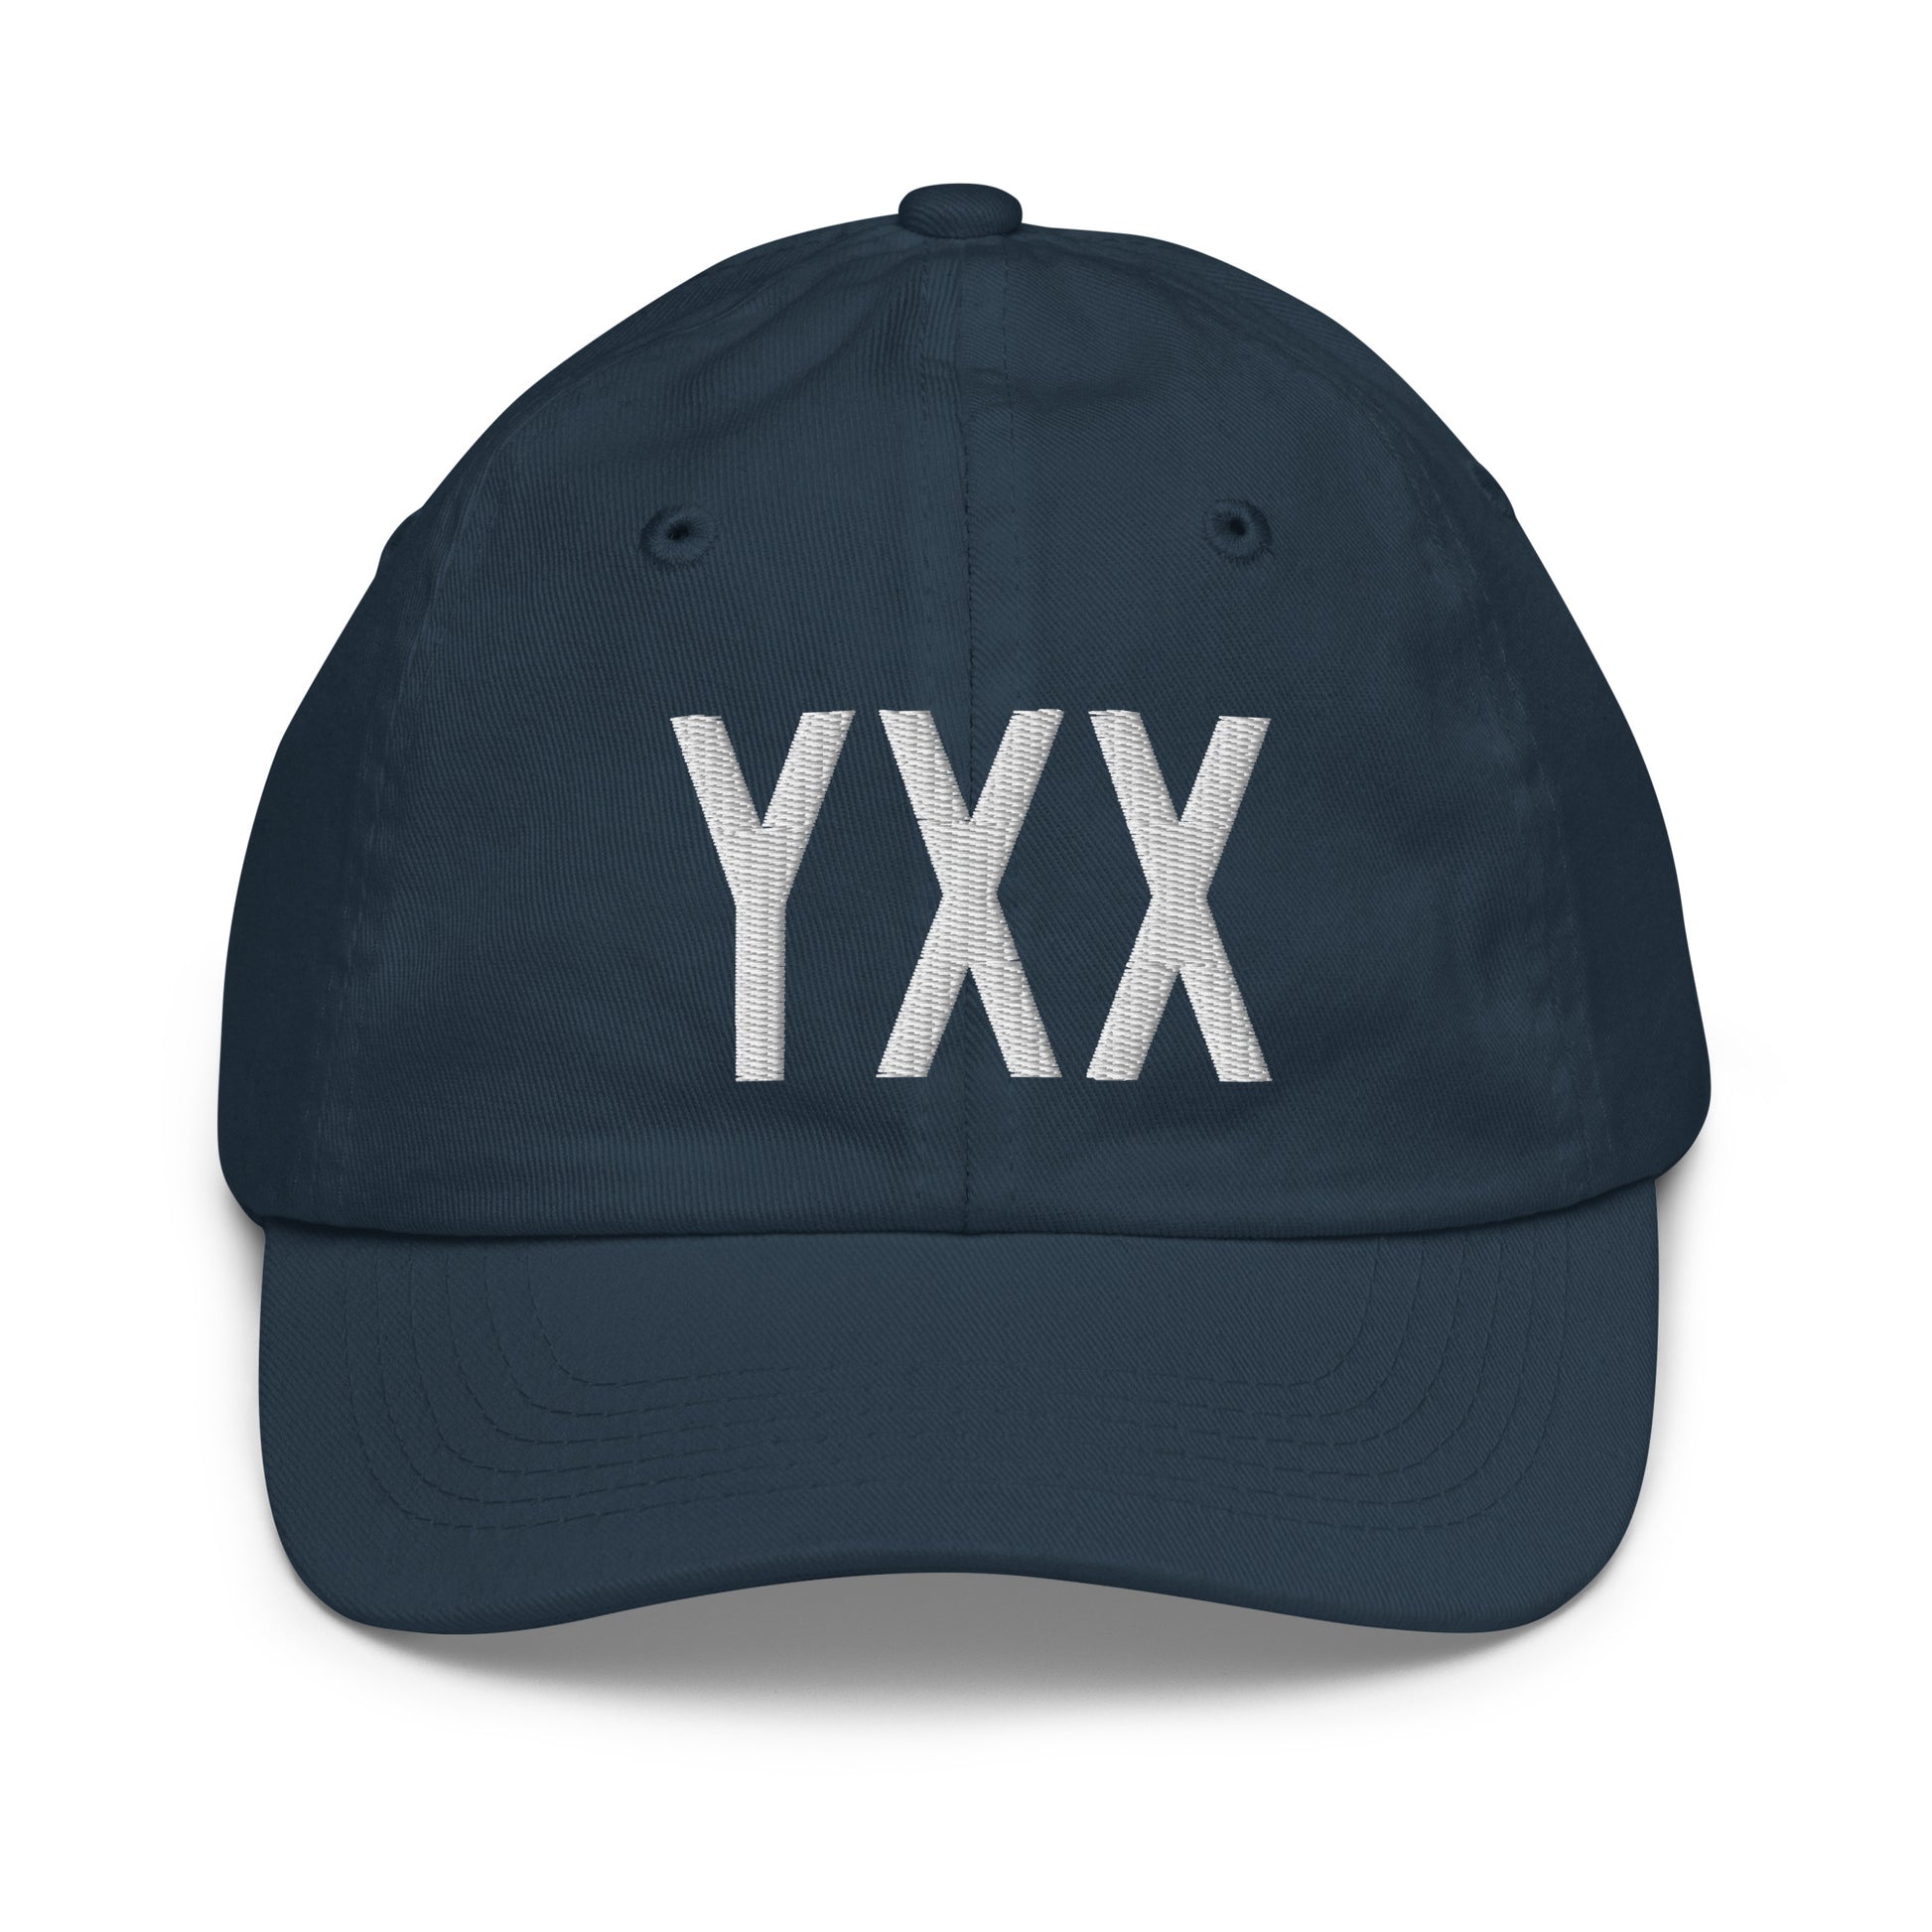 Airport Code Kid's Baseball Cap - White • YXX Abbotsford • YHM Designs - Image 14